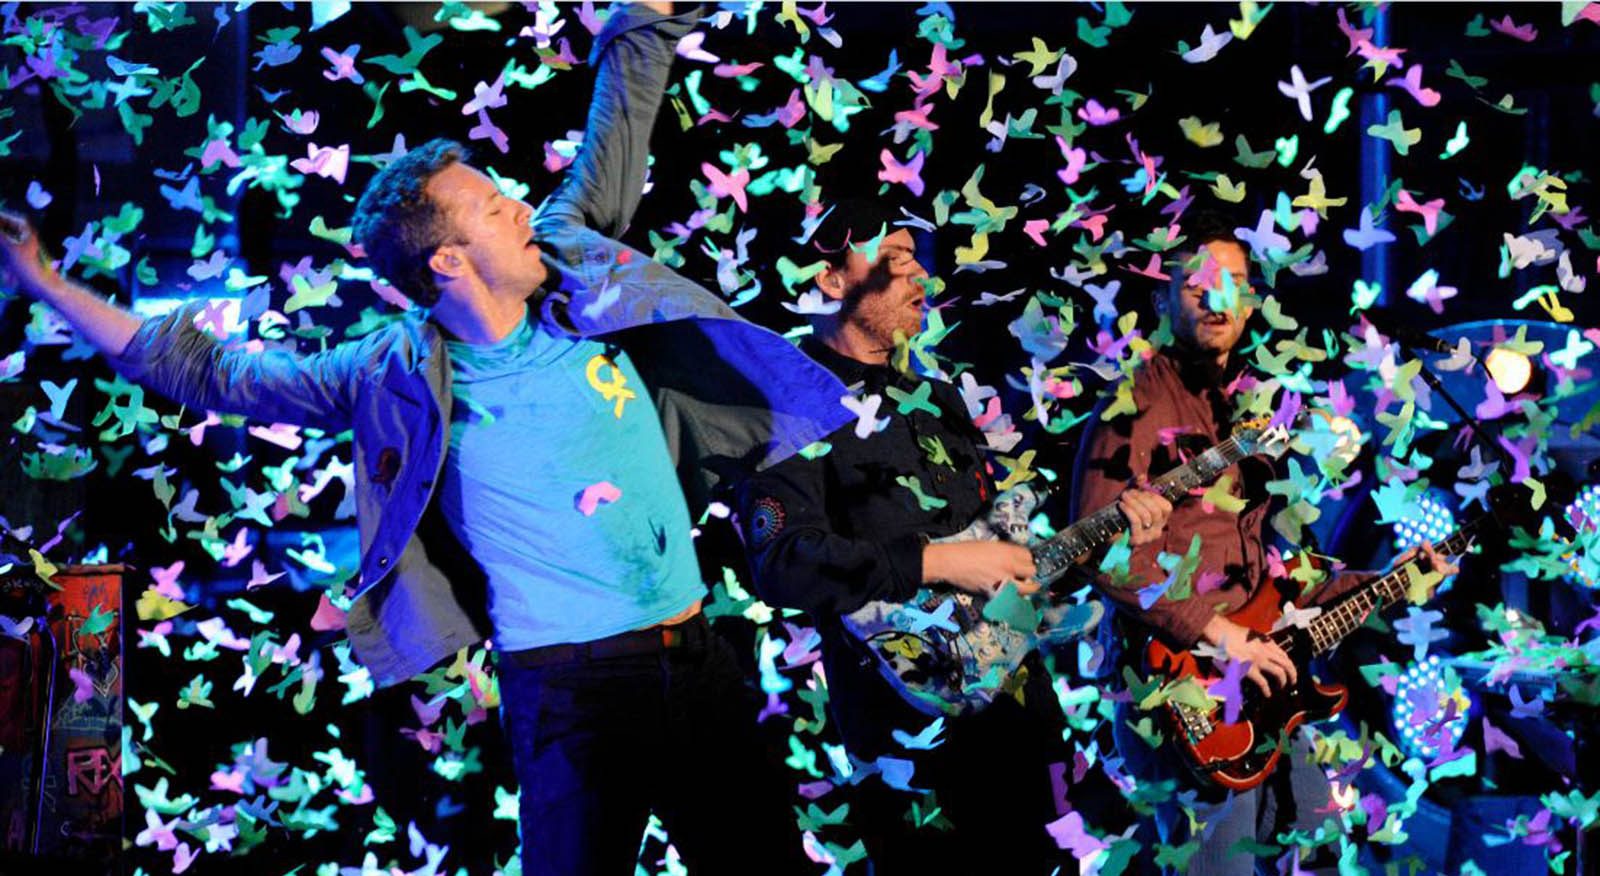 Mira el videoclip casero para “A Head Full of Dreams” de Coldplay